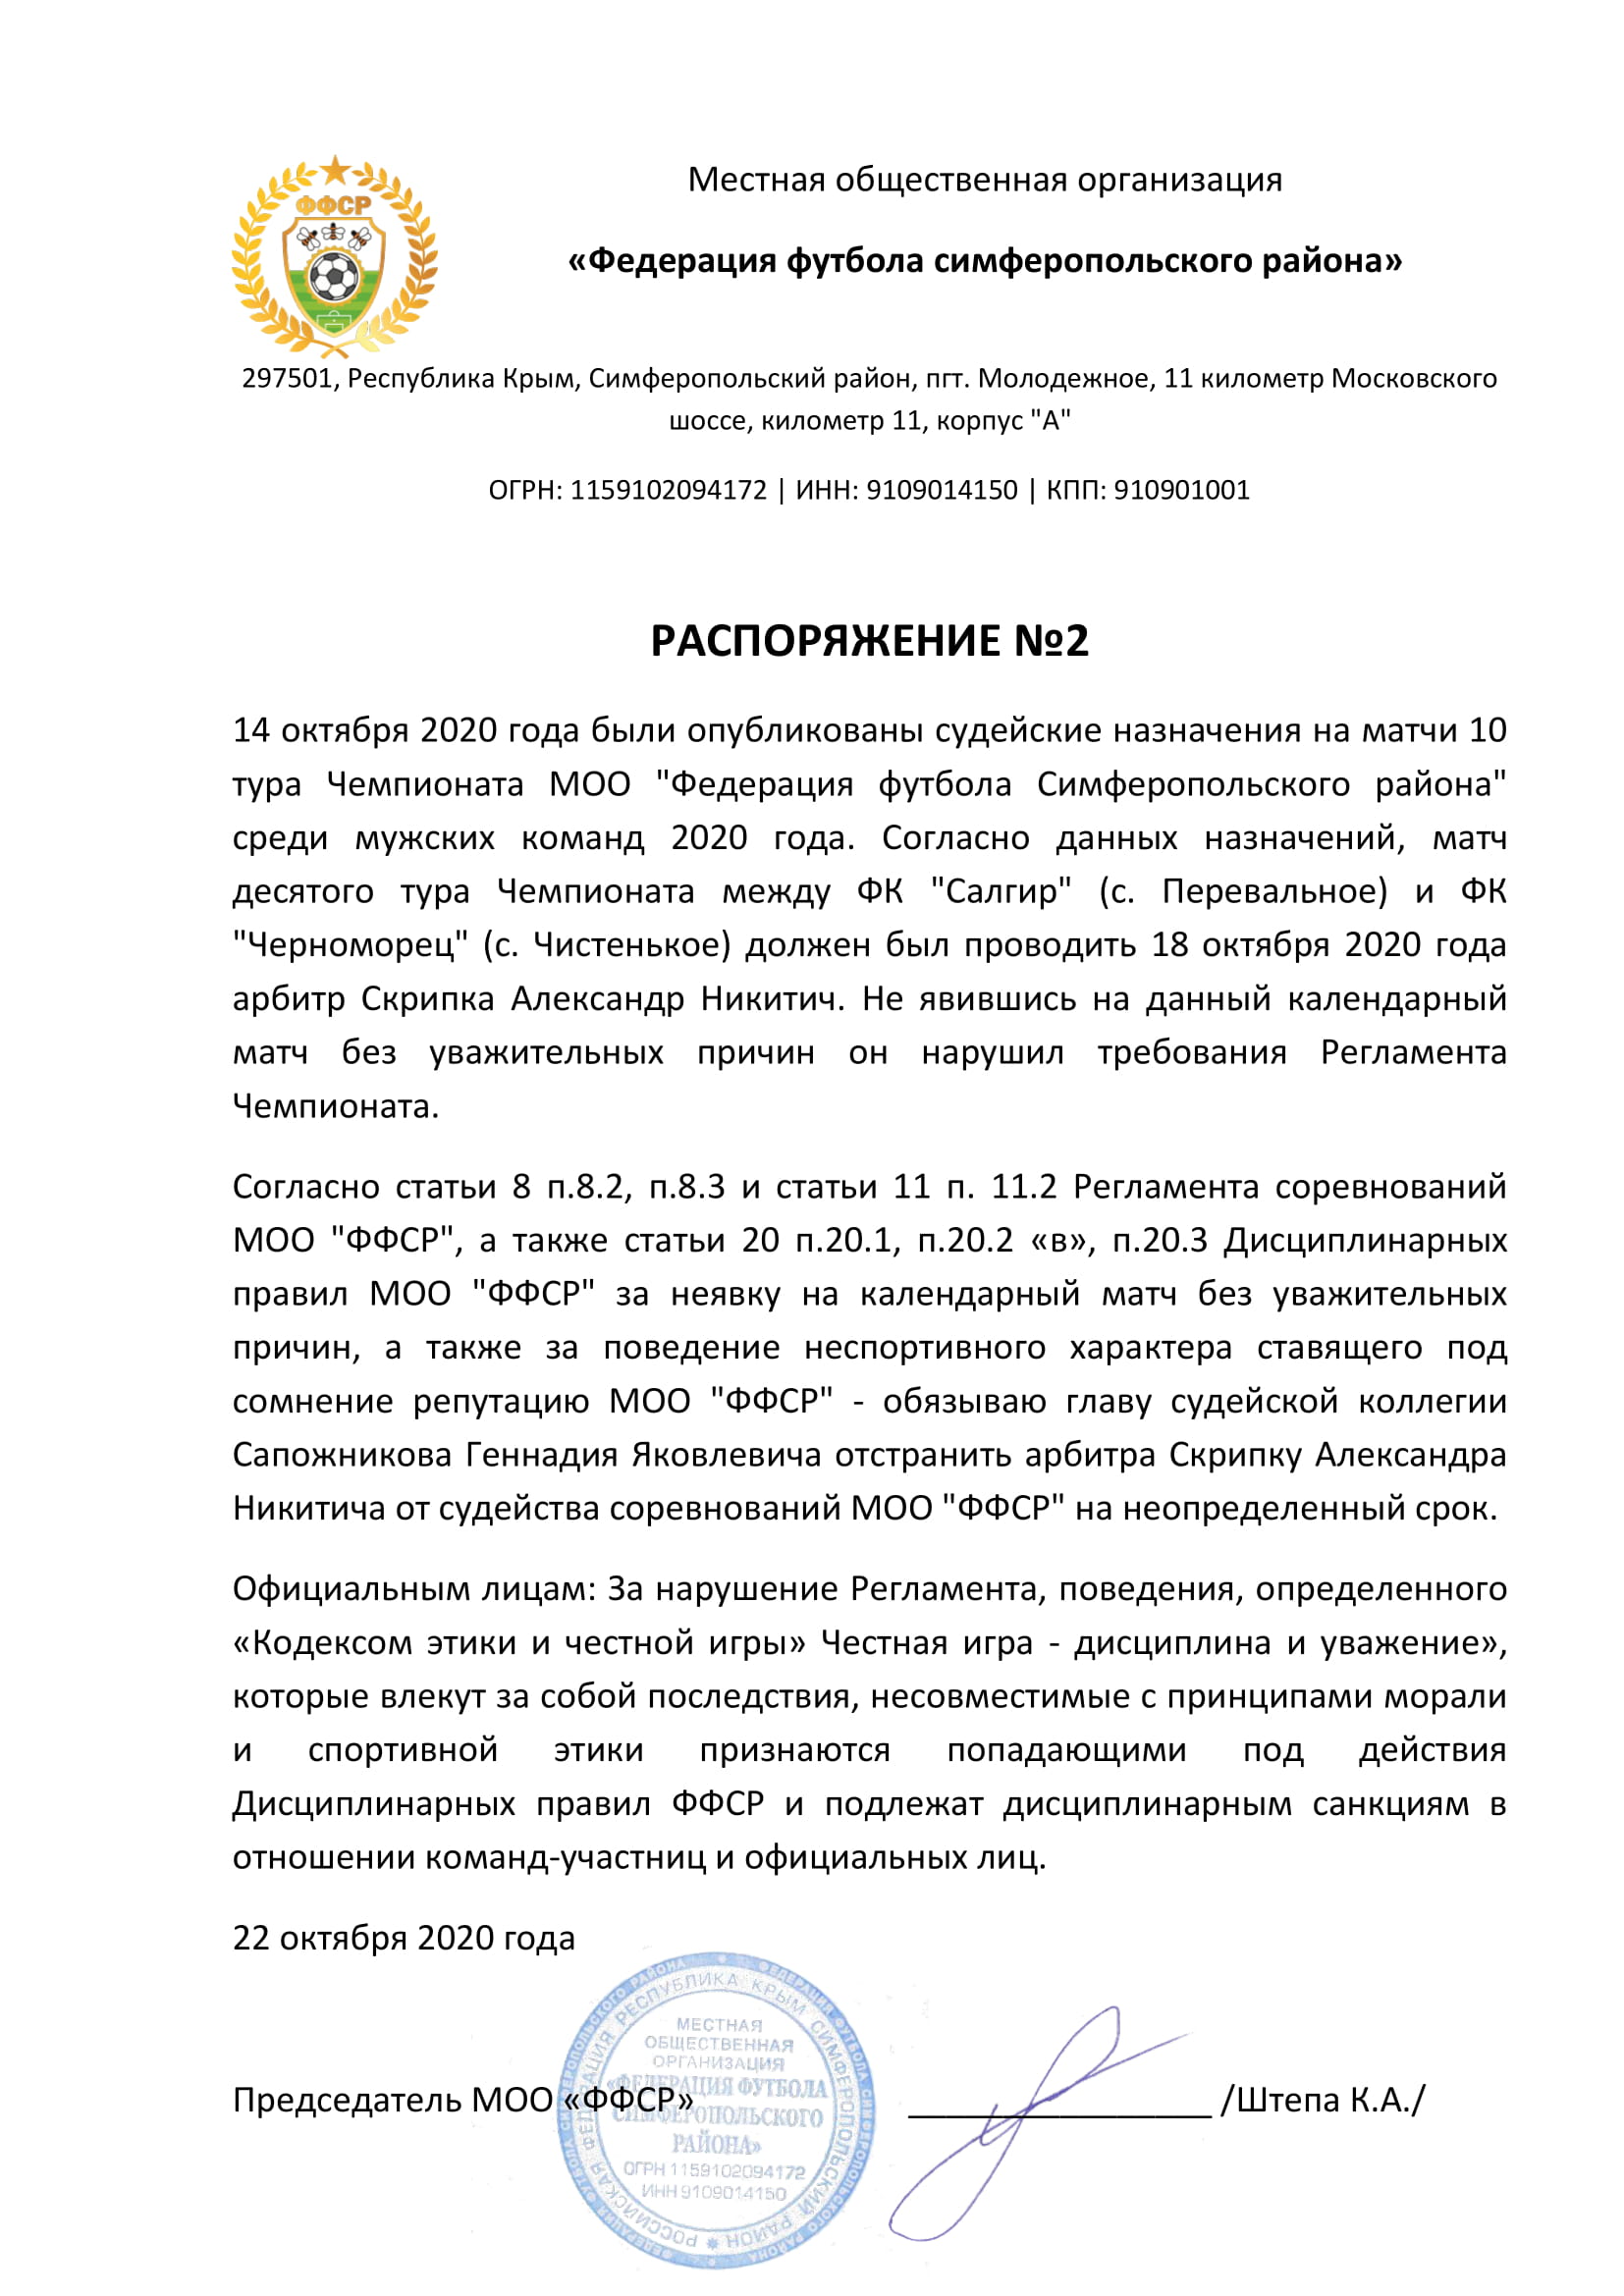 Распоряжение №2 Председателя МОО "ФФСР" от 22 октября 2020 года